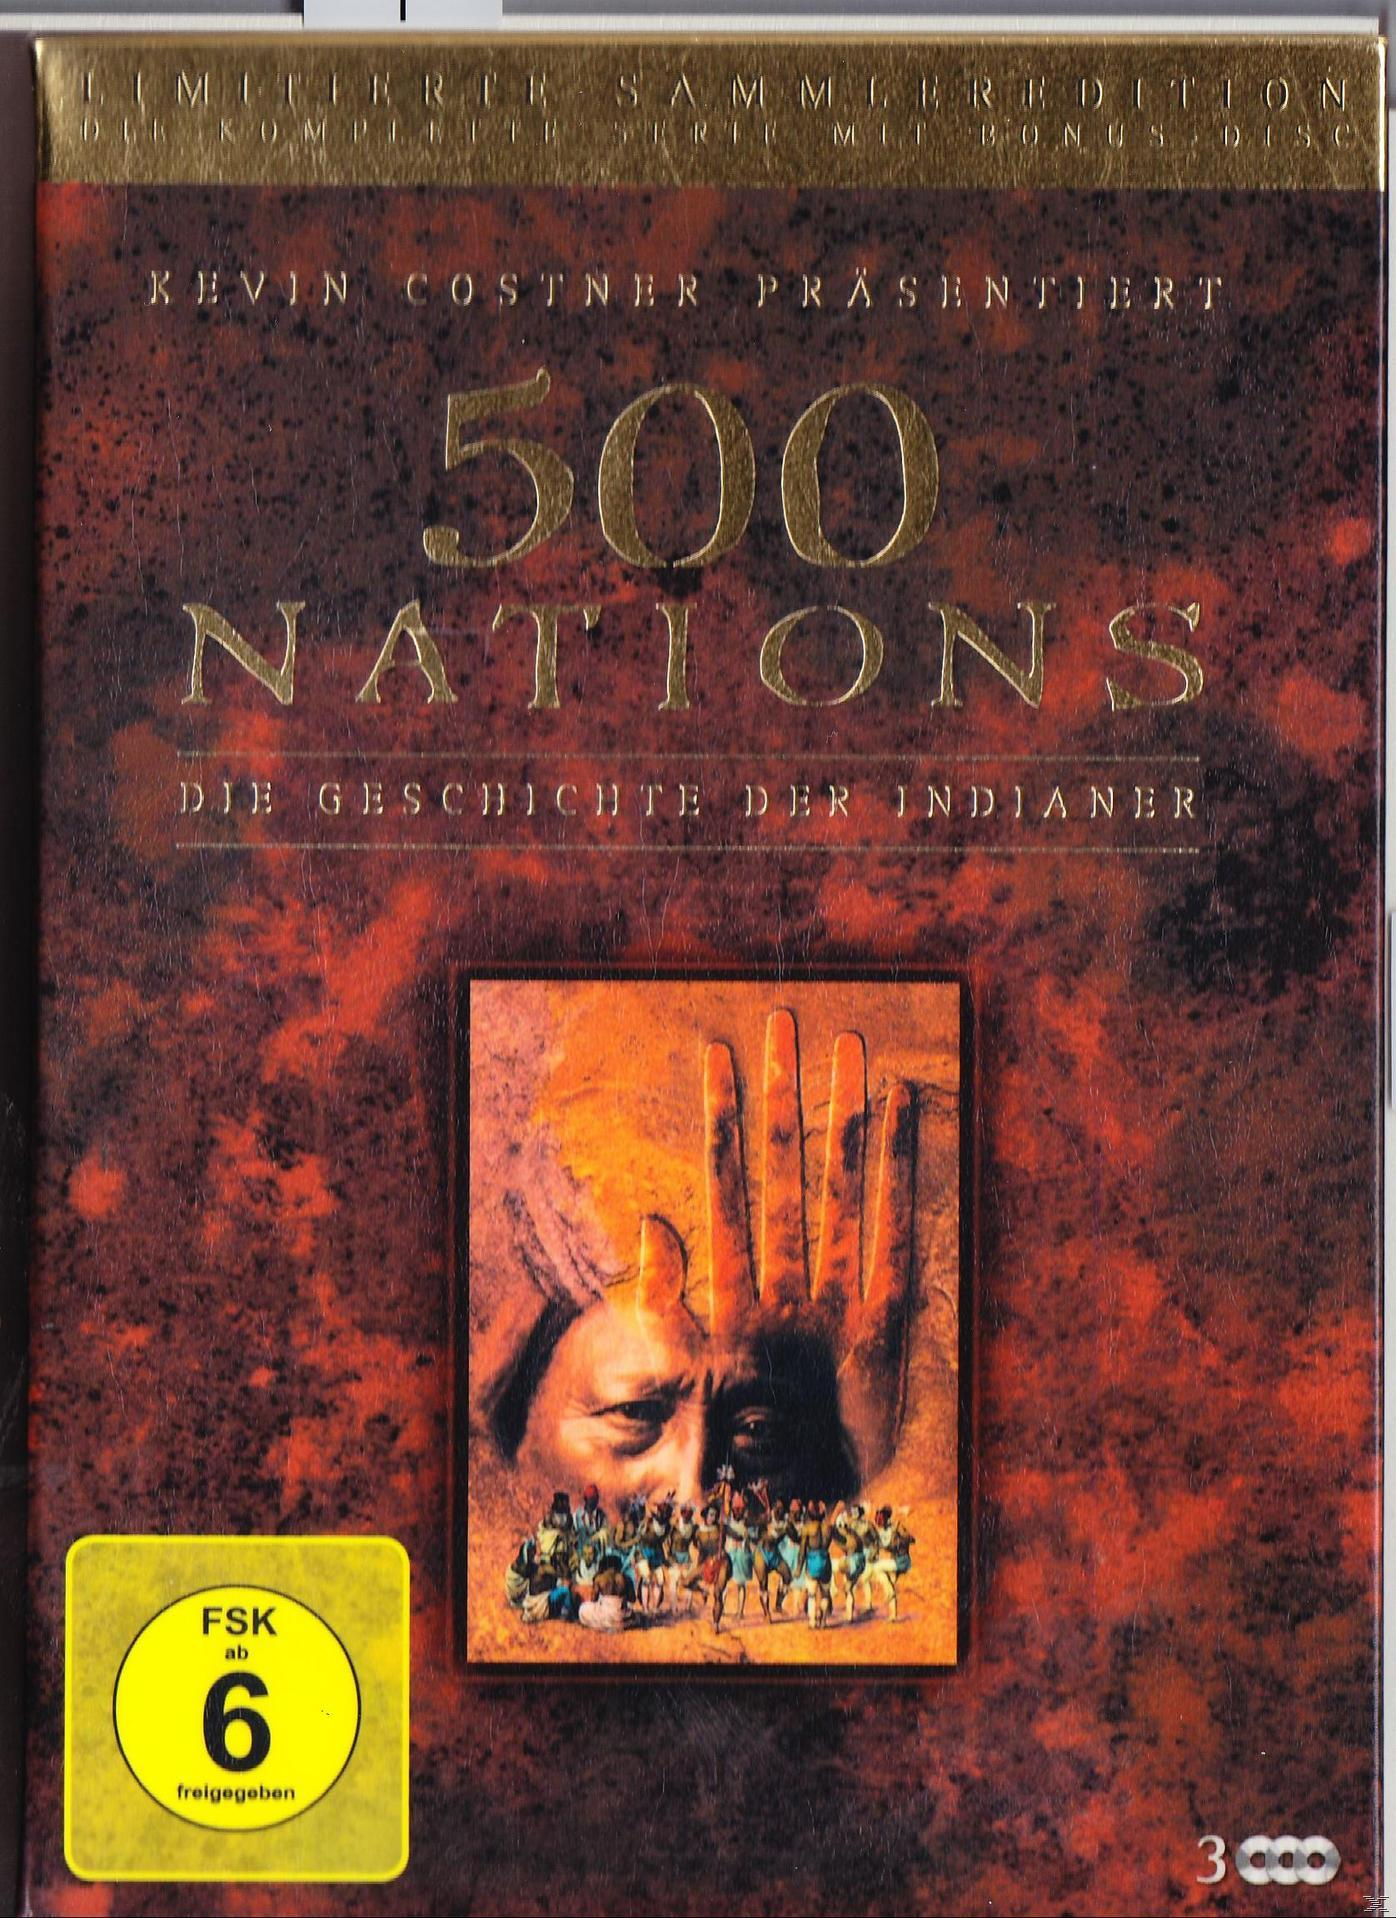 500 Nations - Die DVD der Indianer Geschichte